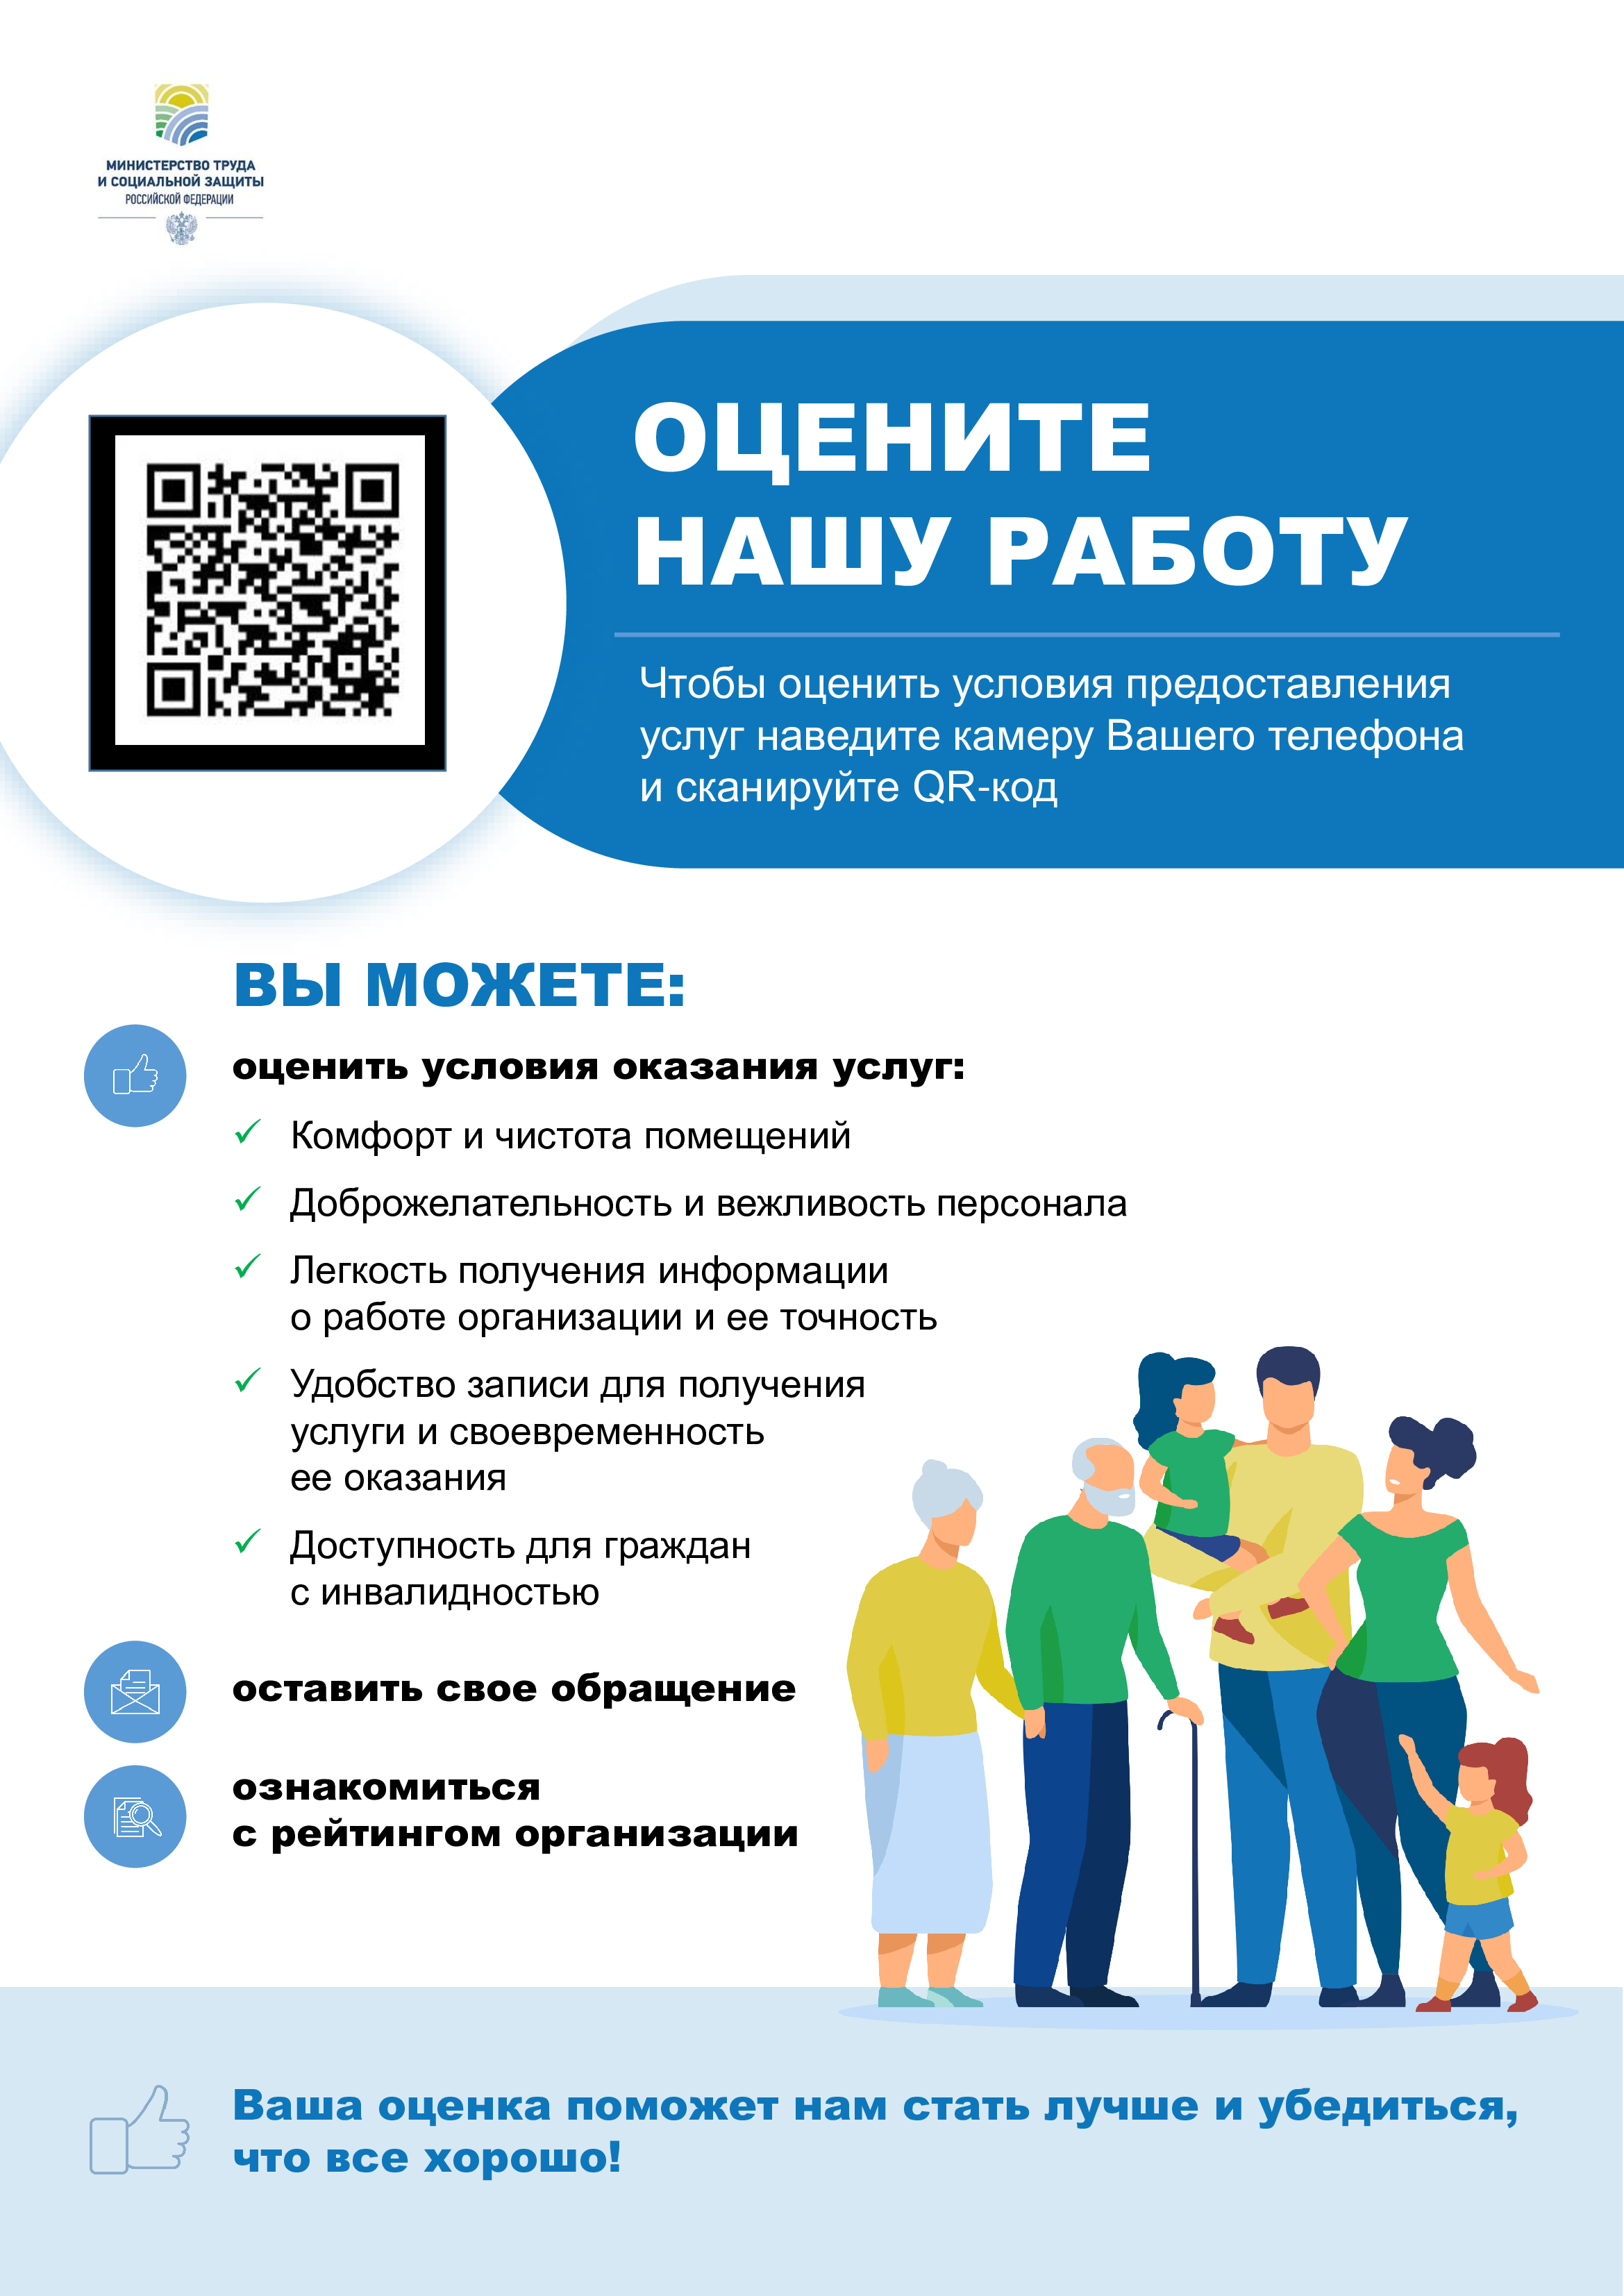 Министерство труда и социальной защиты РФ